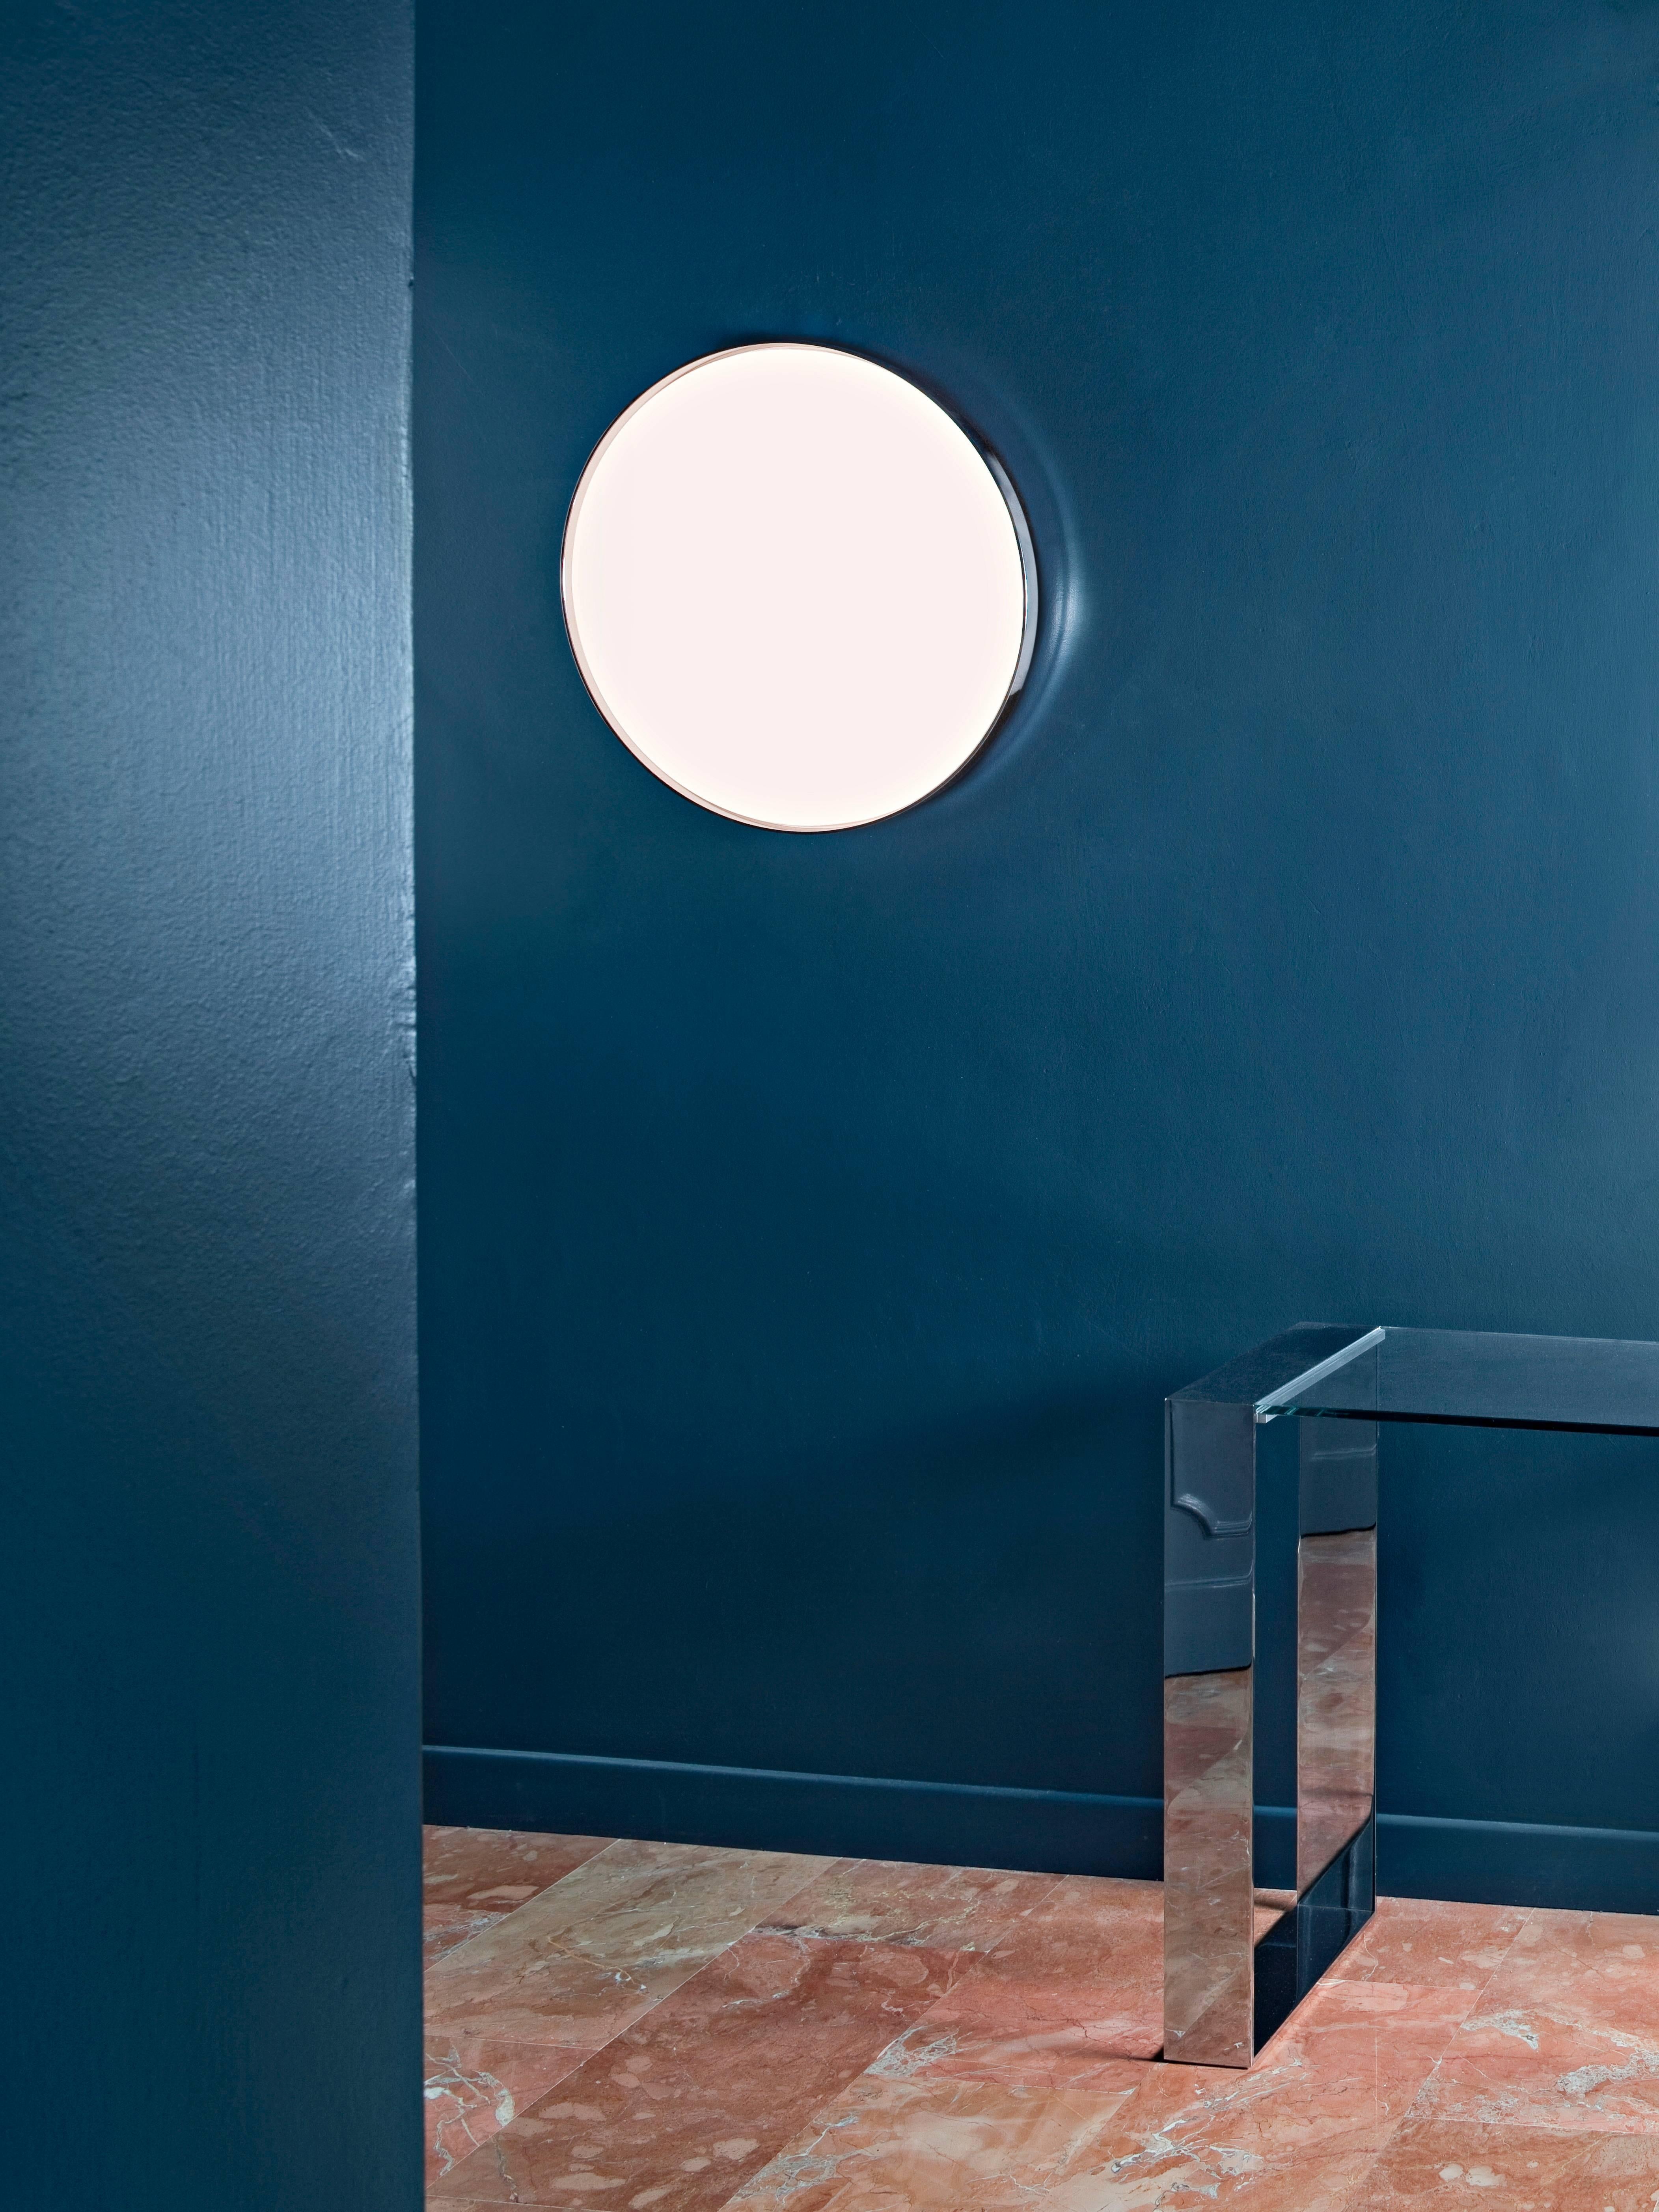 Si simple, et pourtant si brillante : La lampe Clara de Piero Lissoni est un excellent exemple du style minimaliste de l'artiste et de son utilisation intelligente des matériaux. Le diffuseur frontal est fabriqué en PC (polycarbonate) opale moulé